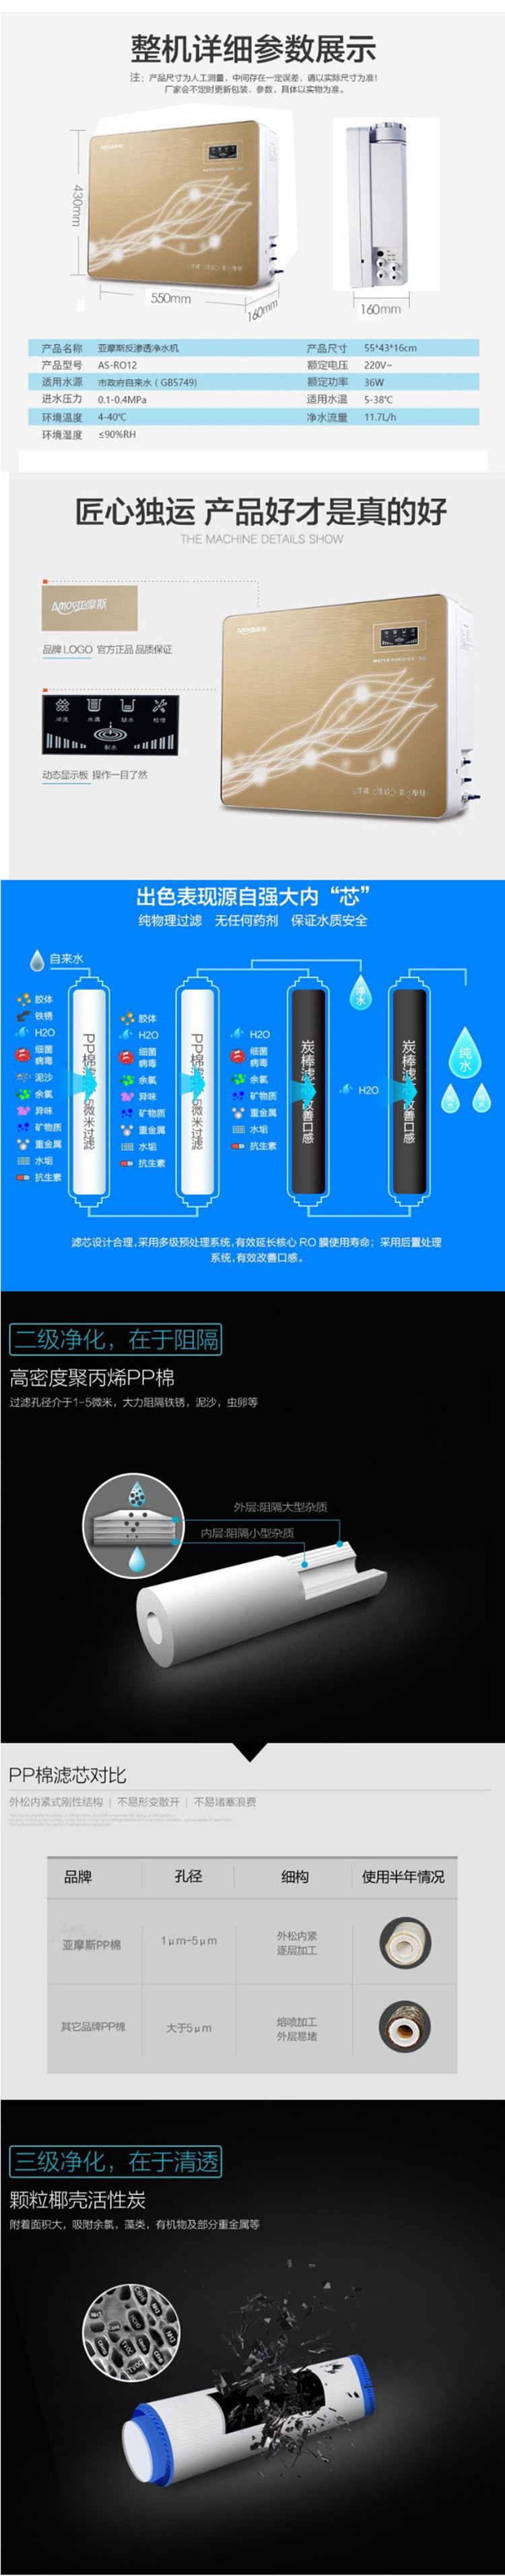 【邮乐新乡馆】荣事达(亚摩斯净水机)RO12Z物理过滤5层精滤 节水节能 高效碳芯